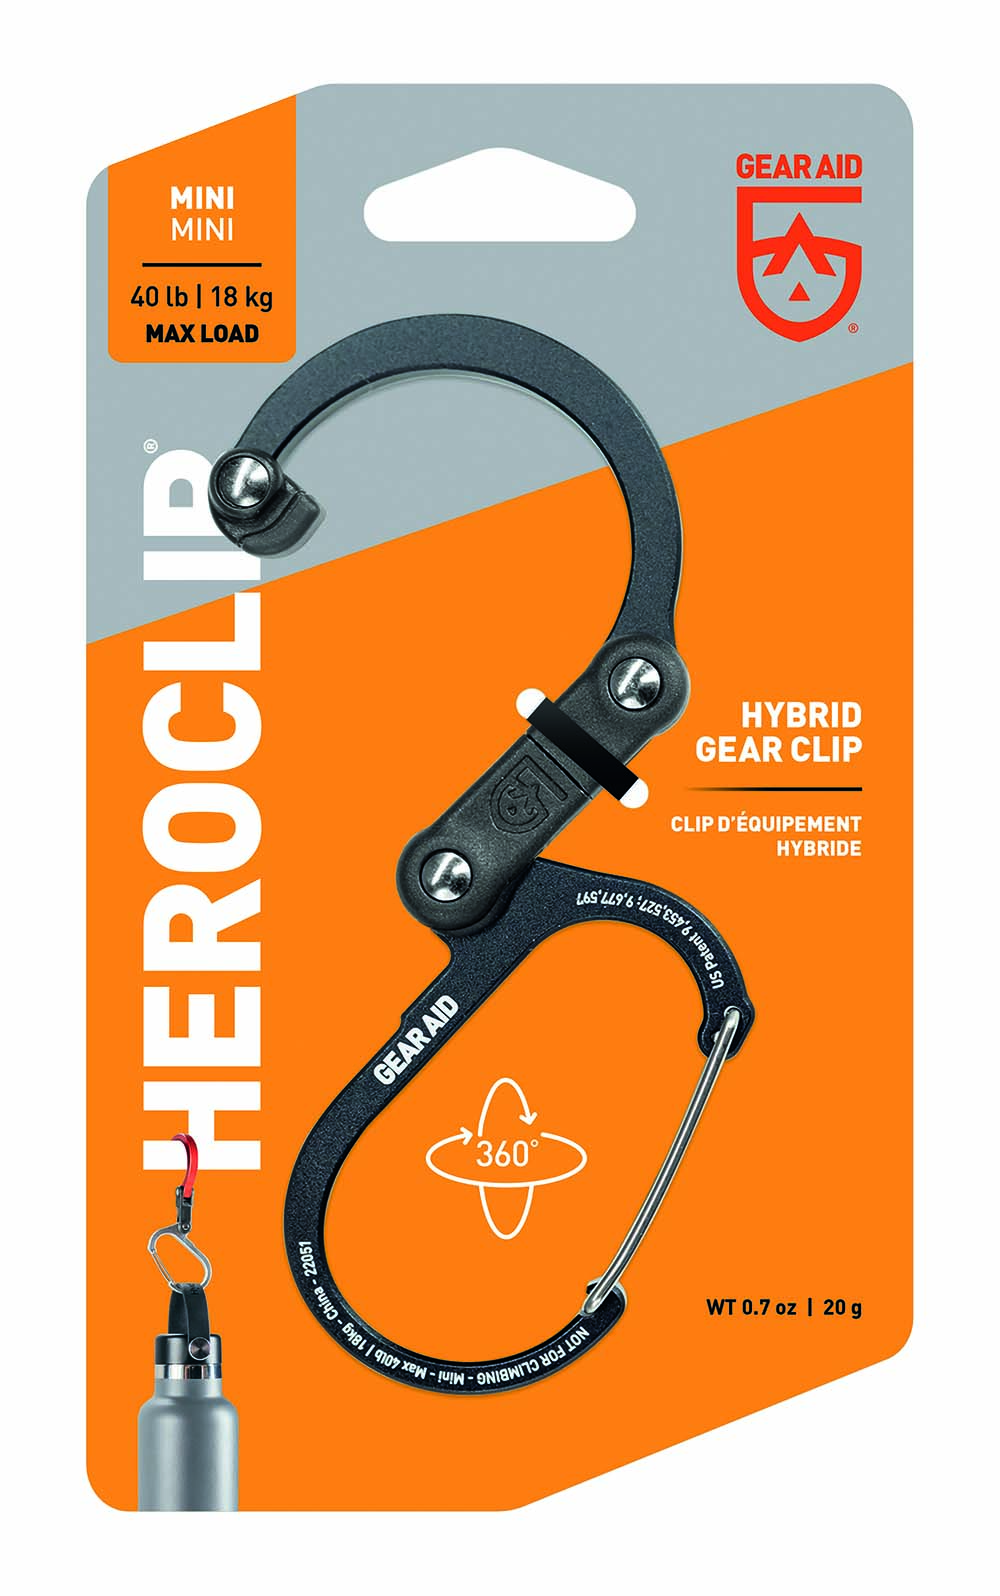 5713090 Haak, hang op of bevestig je uitrusting veilig met de Heroclip. Of je nu op de camping bent, in de garage of onderweg, deze stevige, compacte, draaibare clip zal je favoriete handsfree hulp worden.